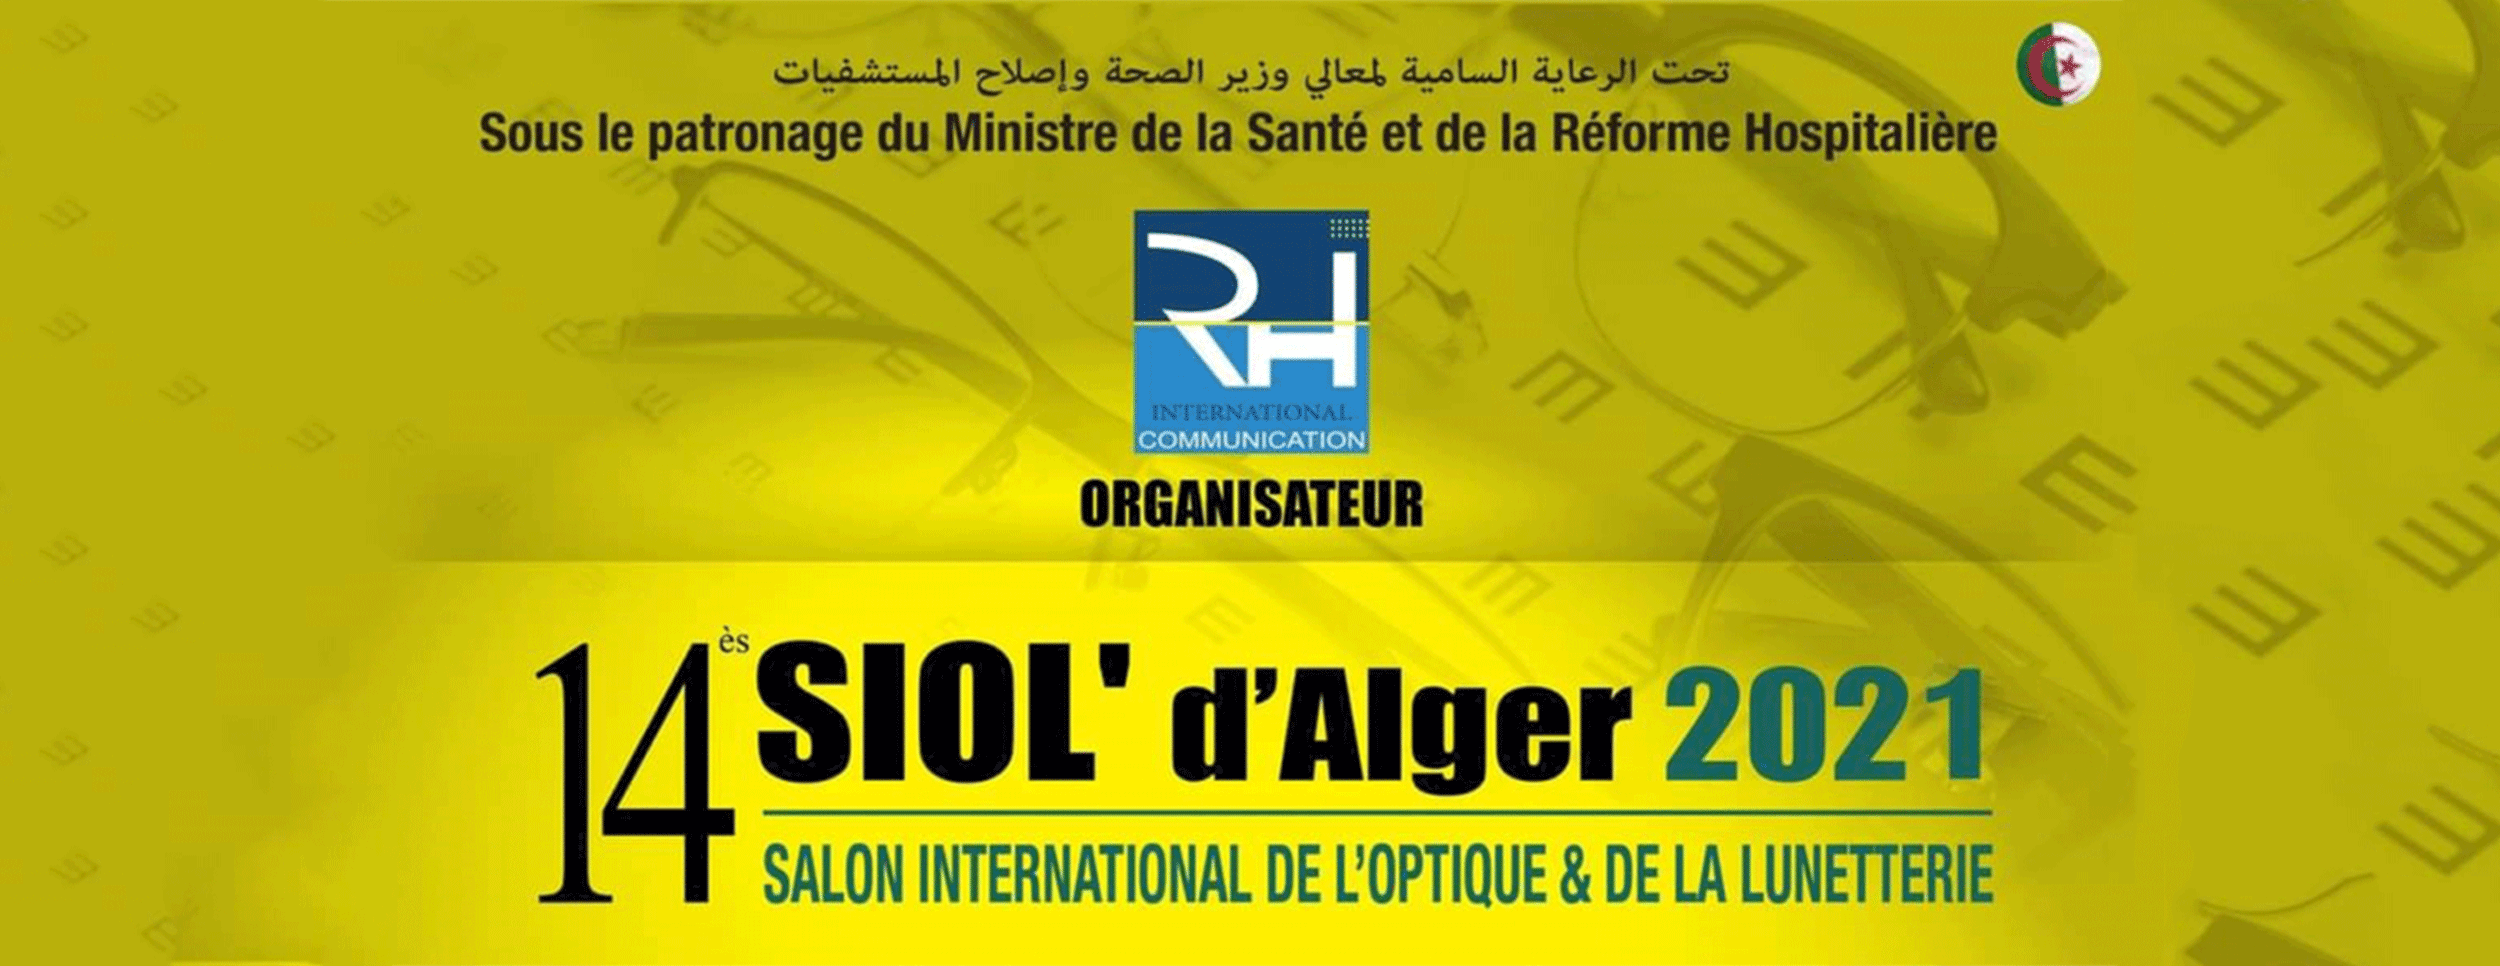 SIOL 2021 : Salon International de l’Optique & Lunetterie